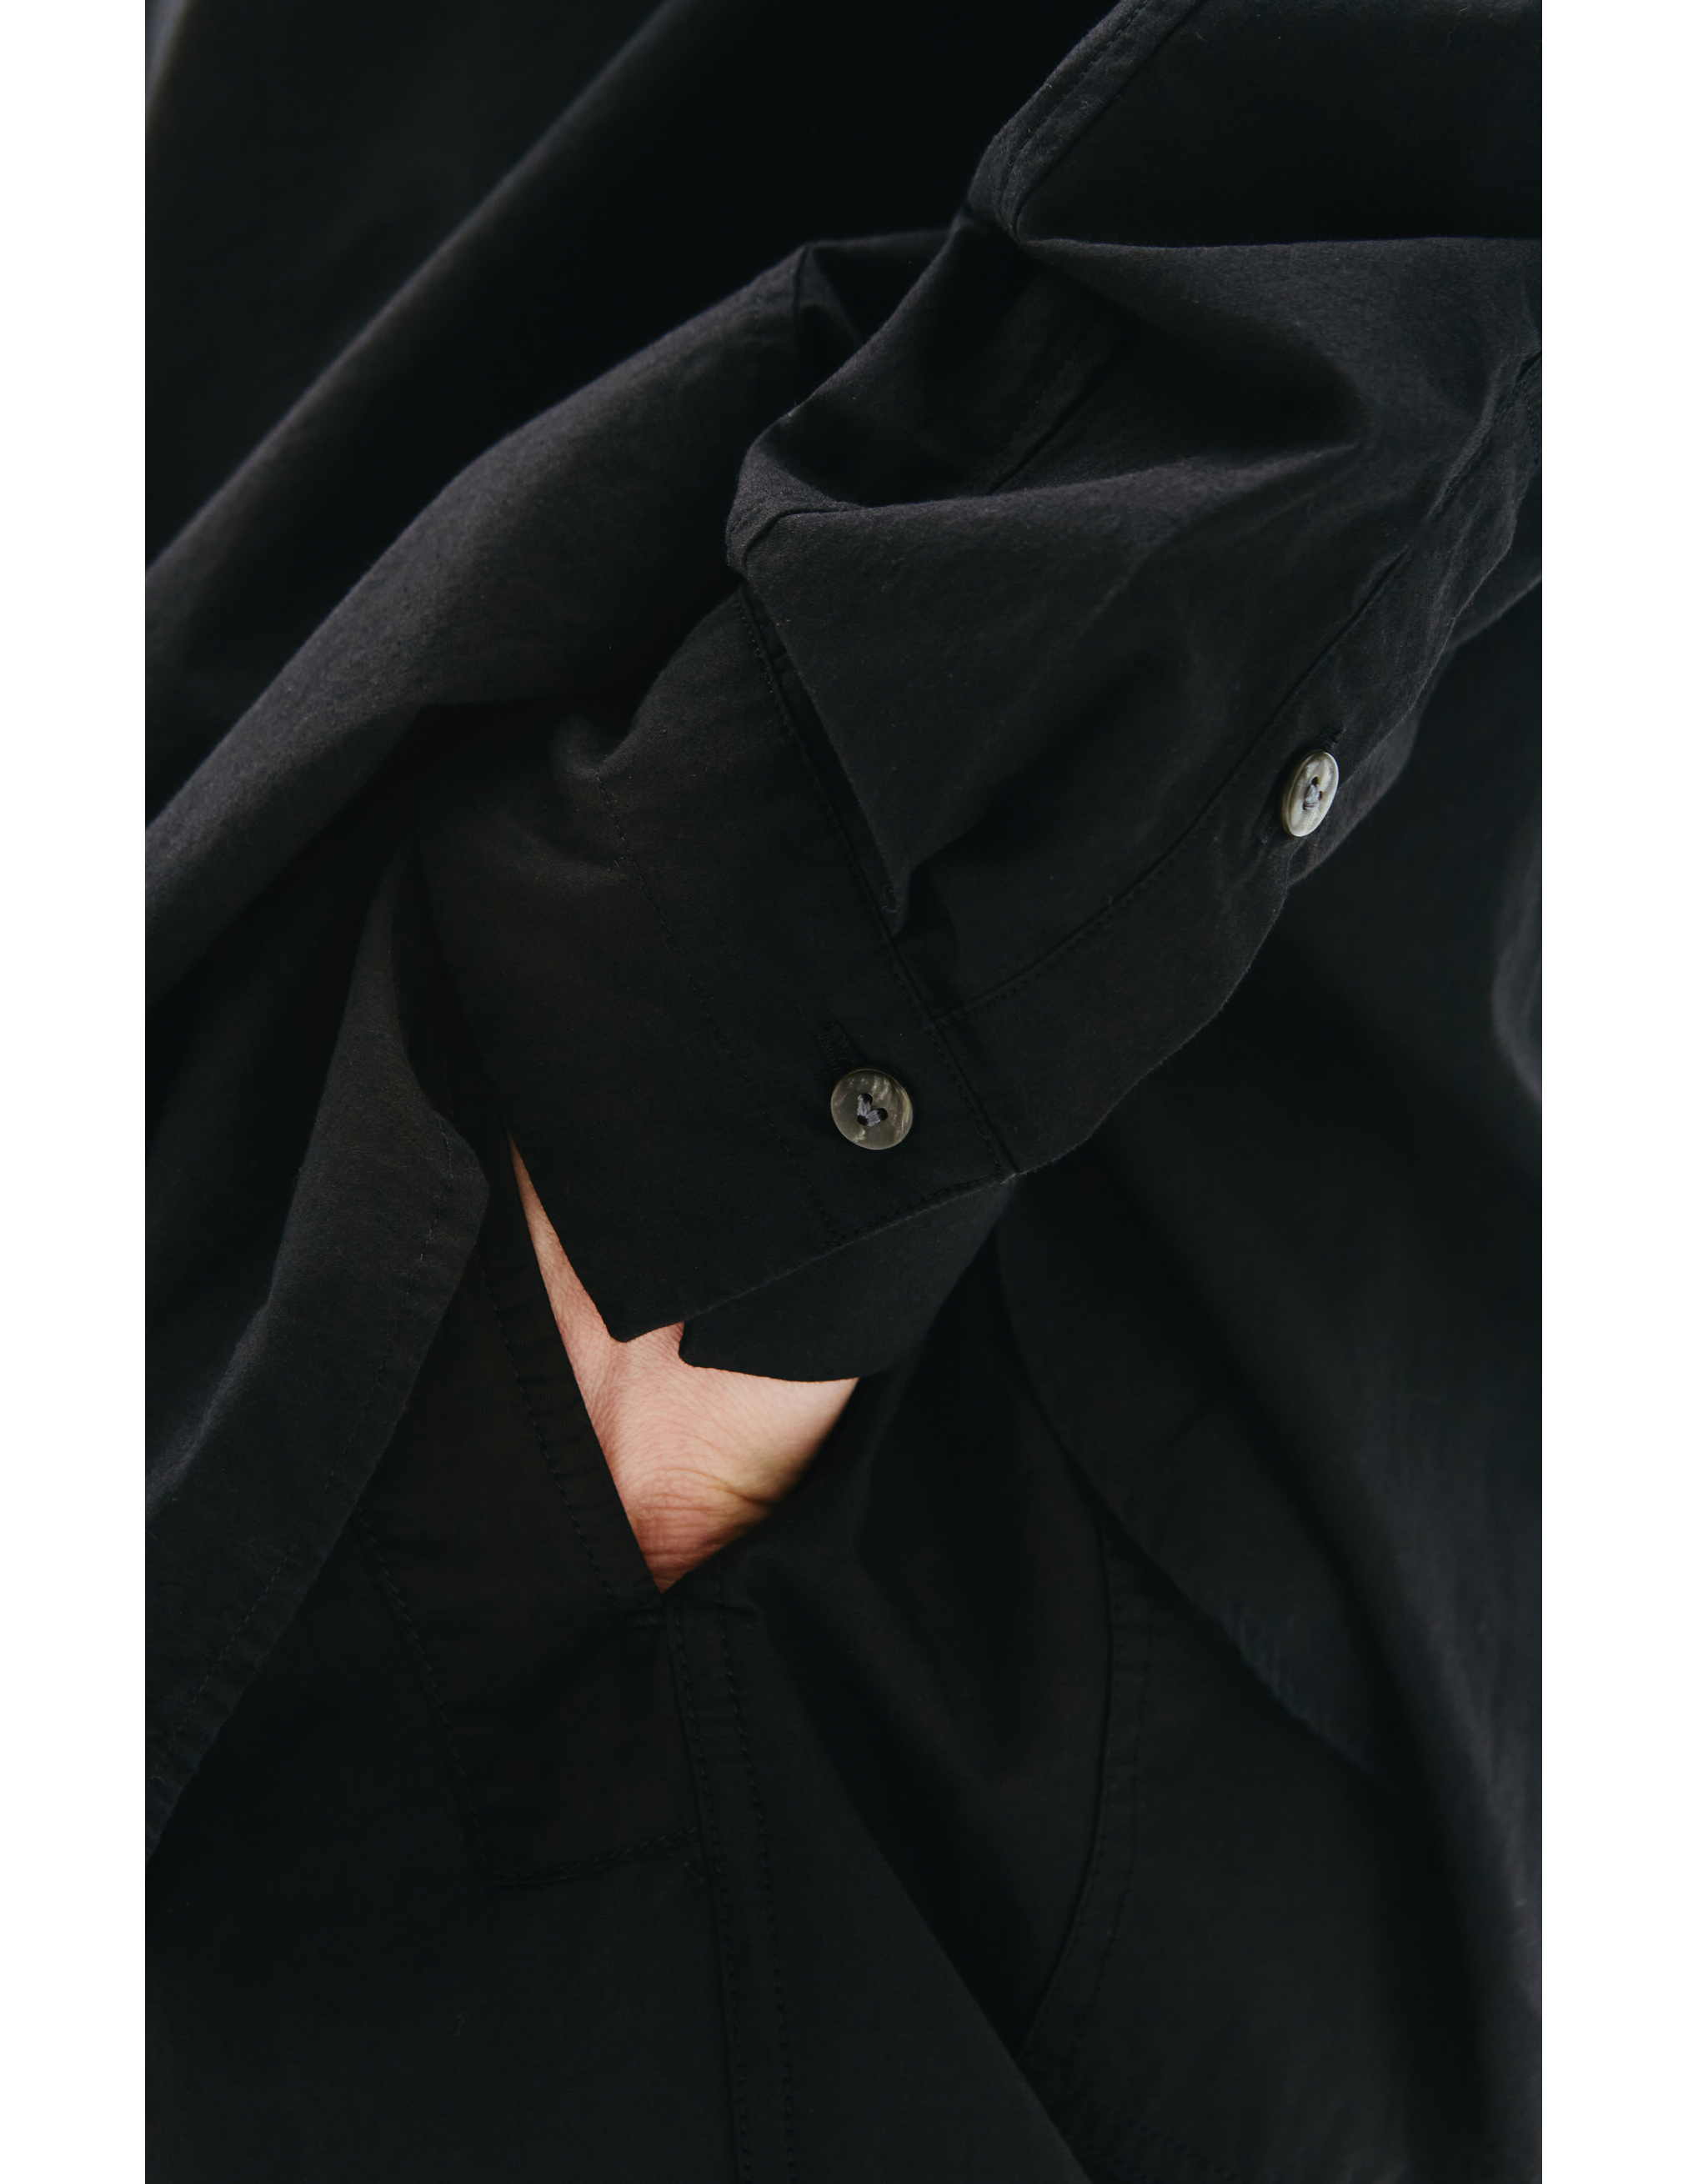 Черная рубашка со скрытым карманом The Viridi-Anne VI/3492/02, размер 4 VI/3492/02 - фото 5